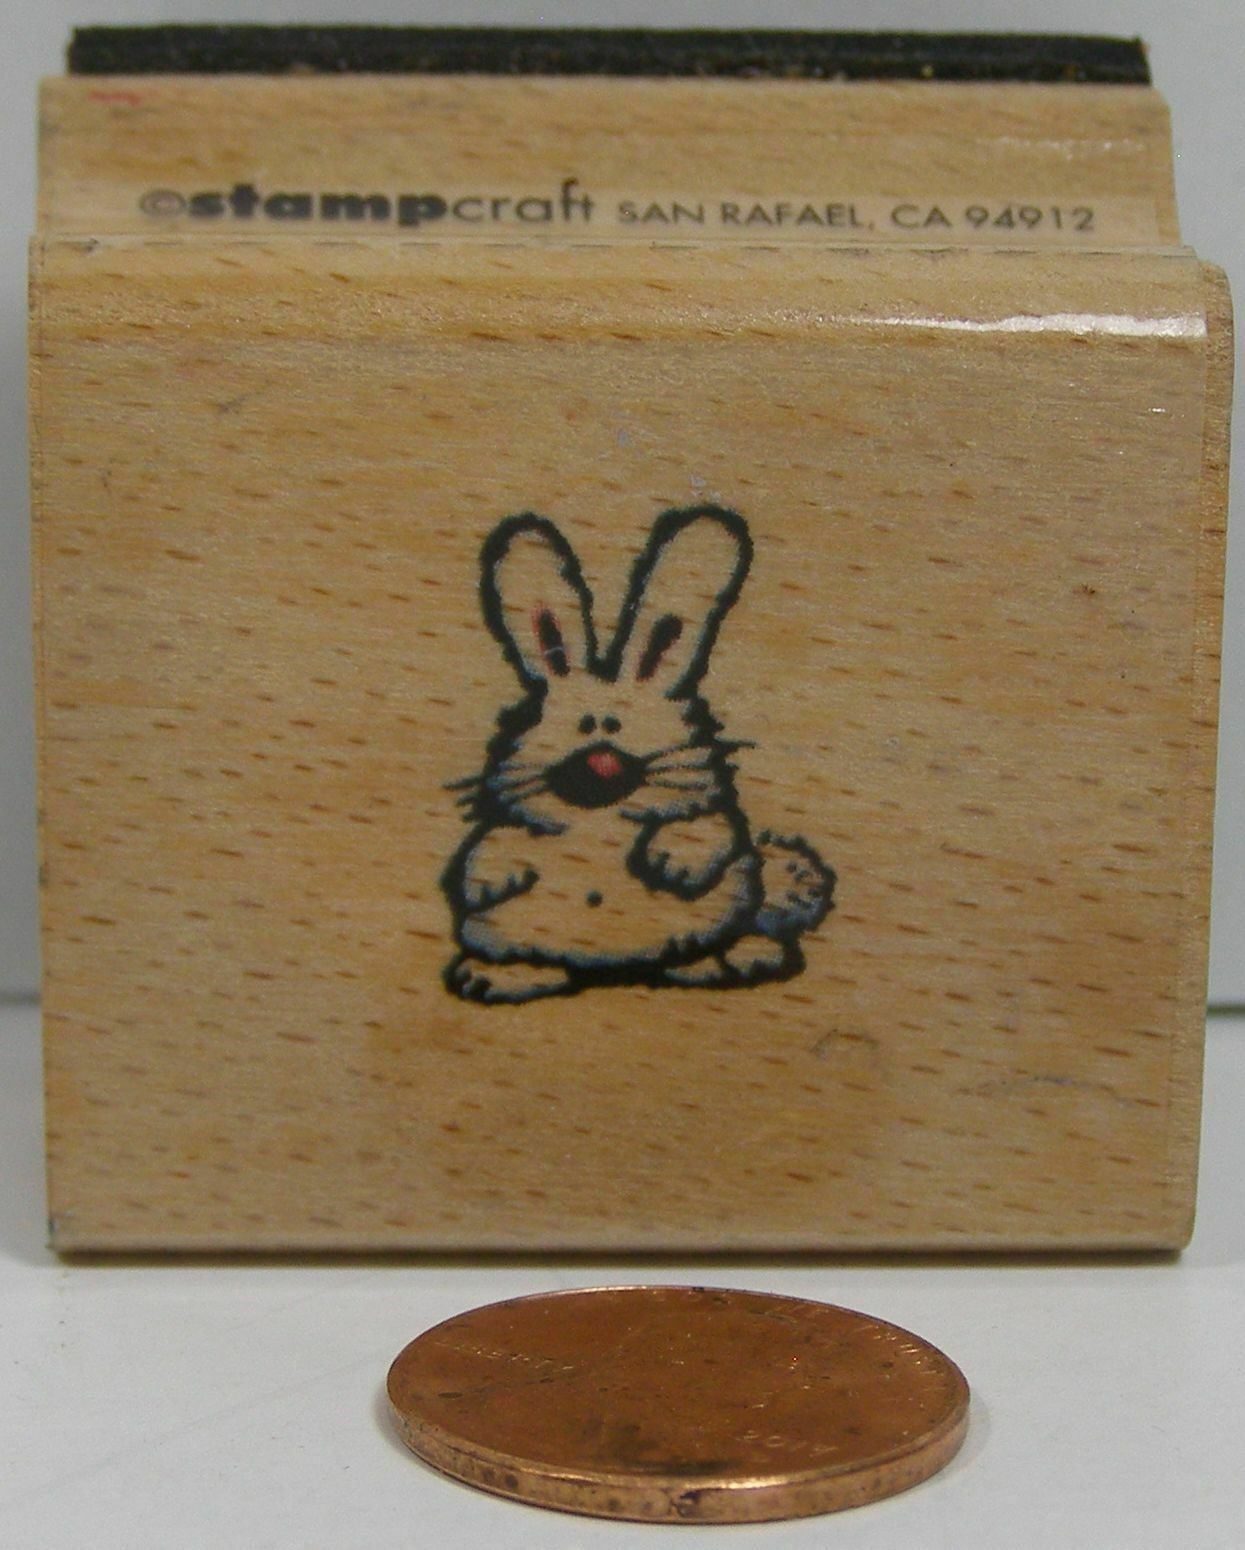 Rubber Stamp Stampcraft 440D249 Bunny 1-1/2X1-1/2"   BAU - $3.99